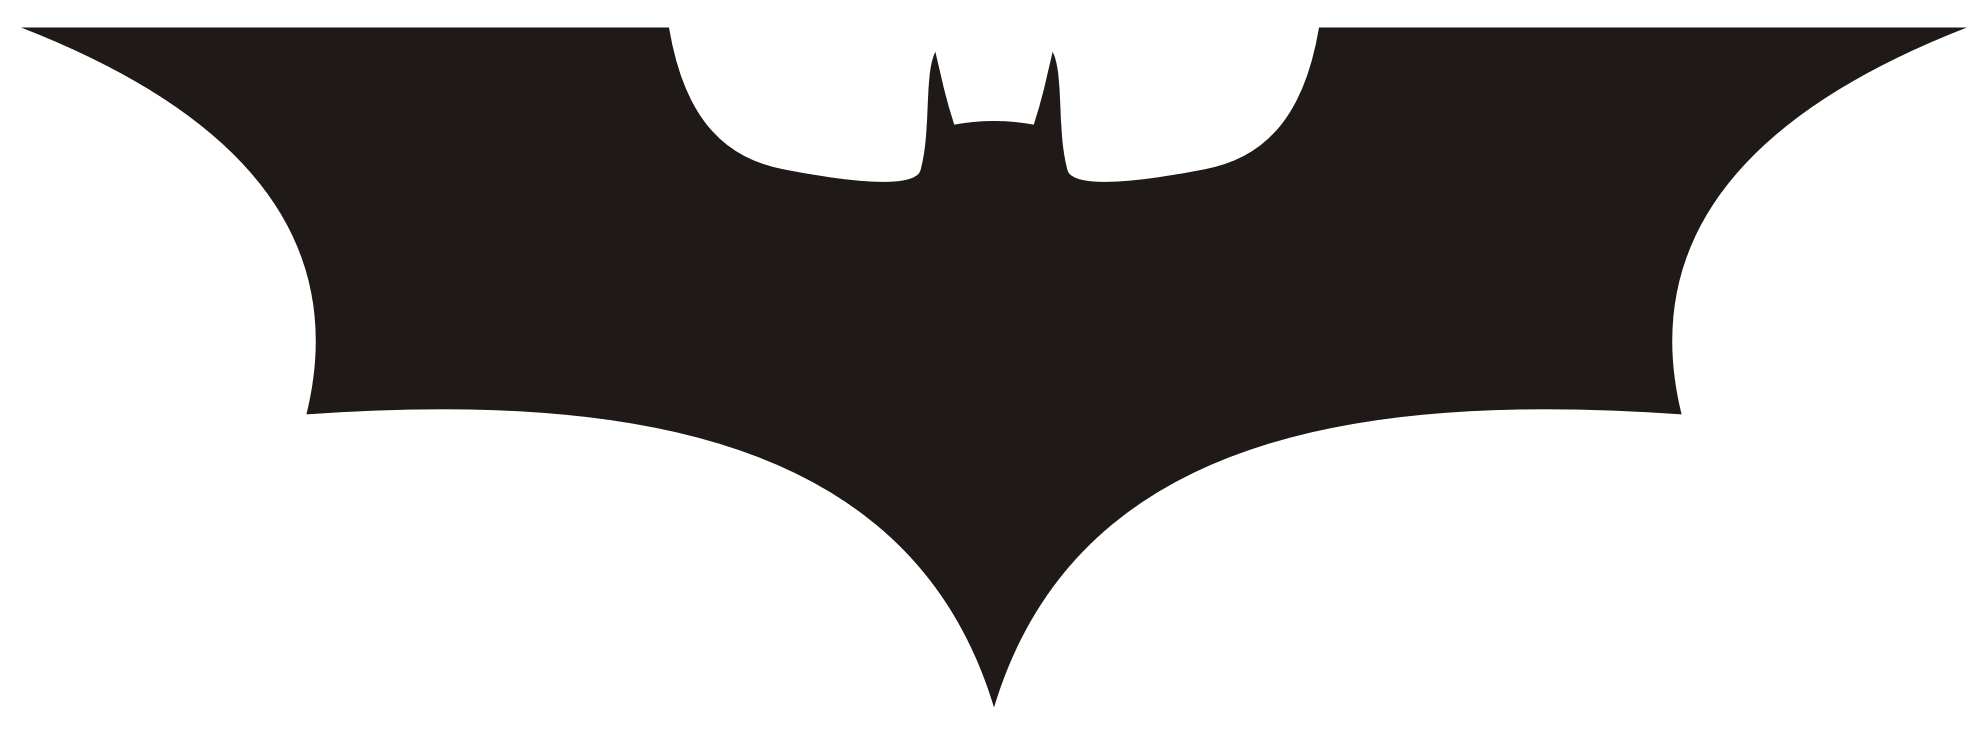 batman logos and batman fan art  clipart best  clipart best